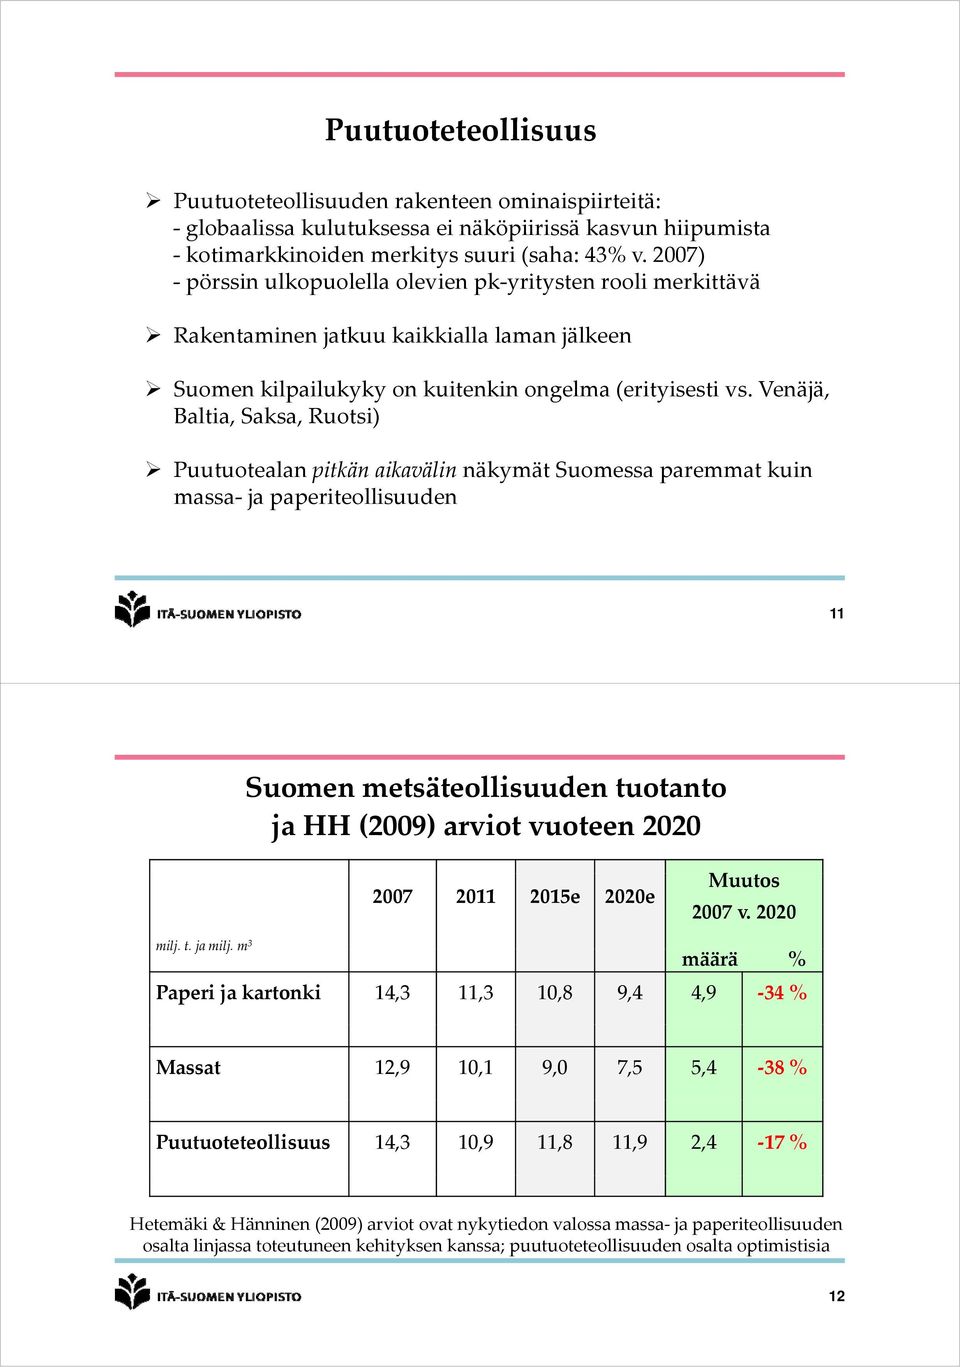 Venäjä, Baltia, Saksa, Ruotsi) Puutuotealan pitkän aikavälin näkymät Suomessa paremmat kuin massa a ja paperiteollisuuden 11 Suomen metsäteollisuuden eo e tuotanto o ja HH (2009) arviot vuoteen 2020